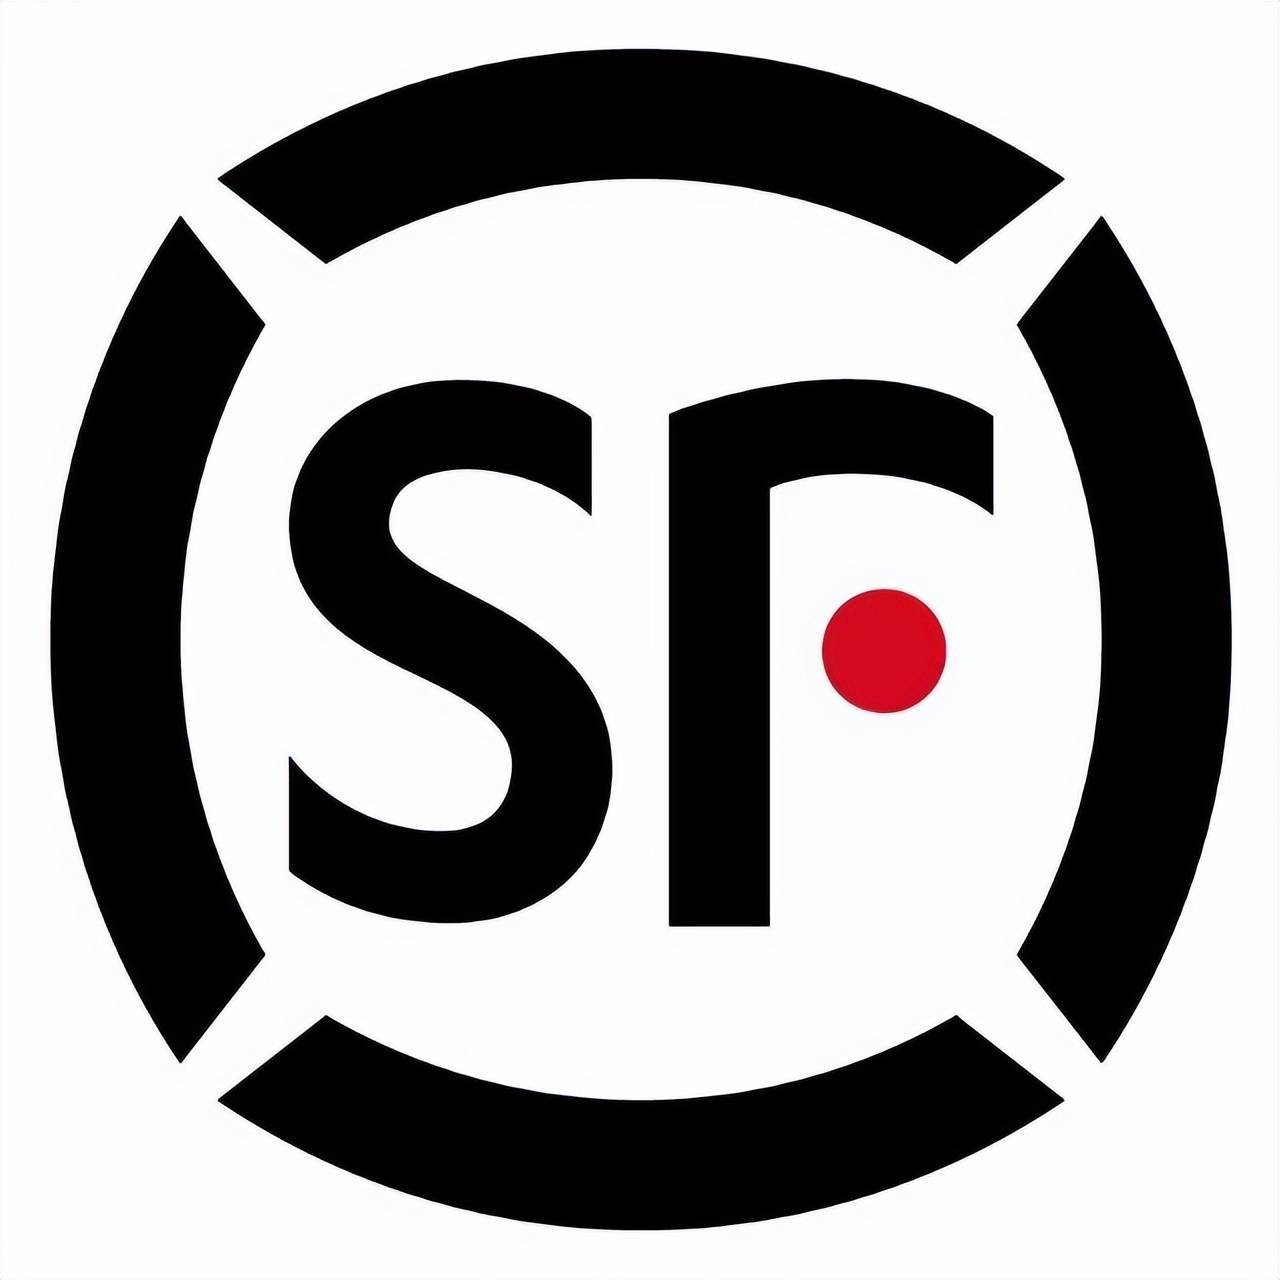 顺丰航空有限公司 logo图片